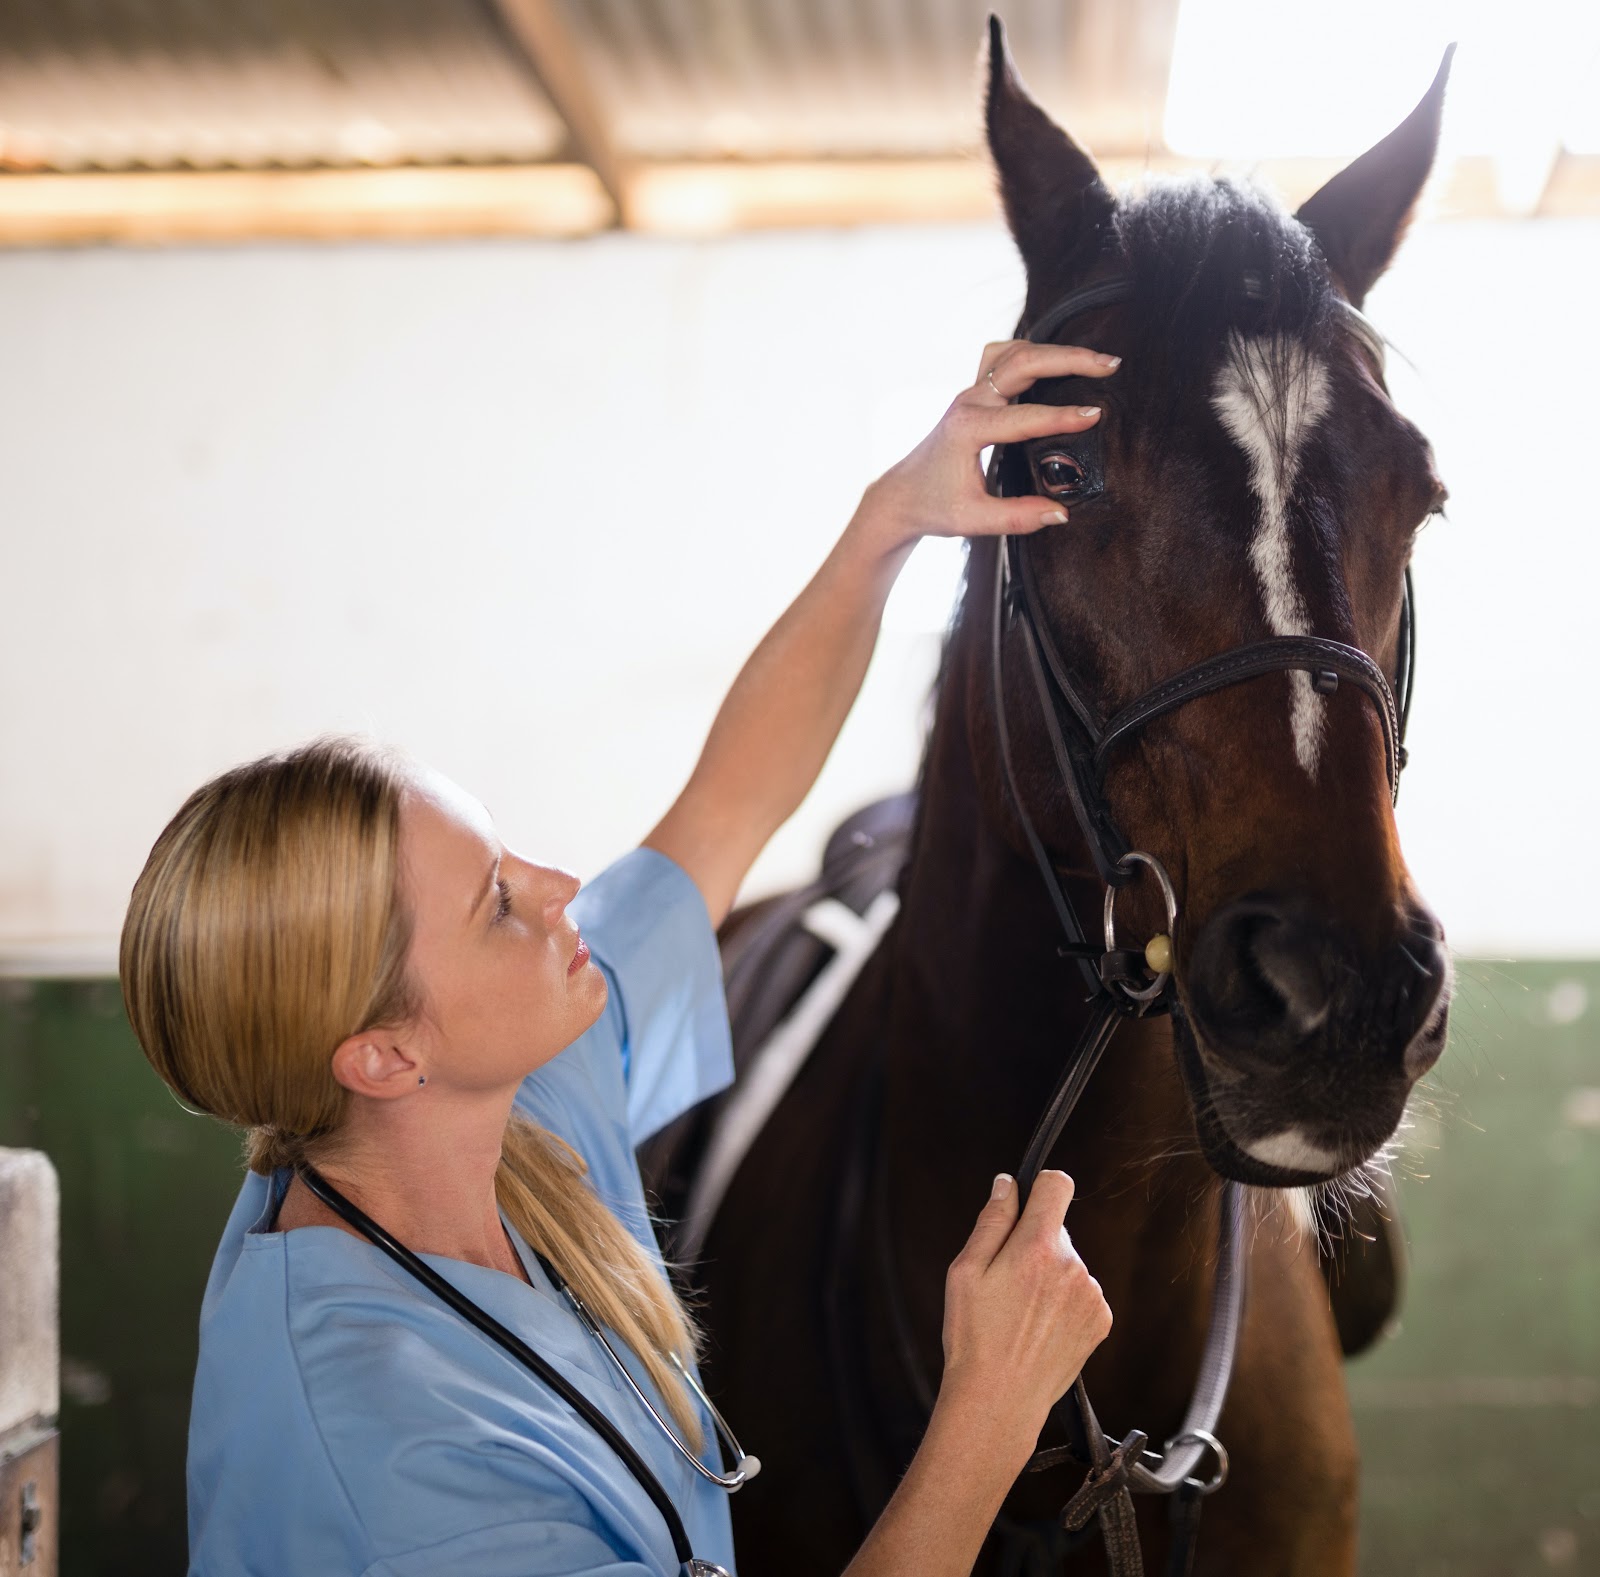 vet examines a sick horse at a show
